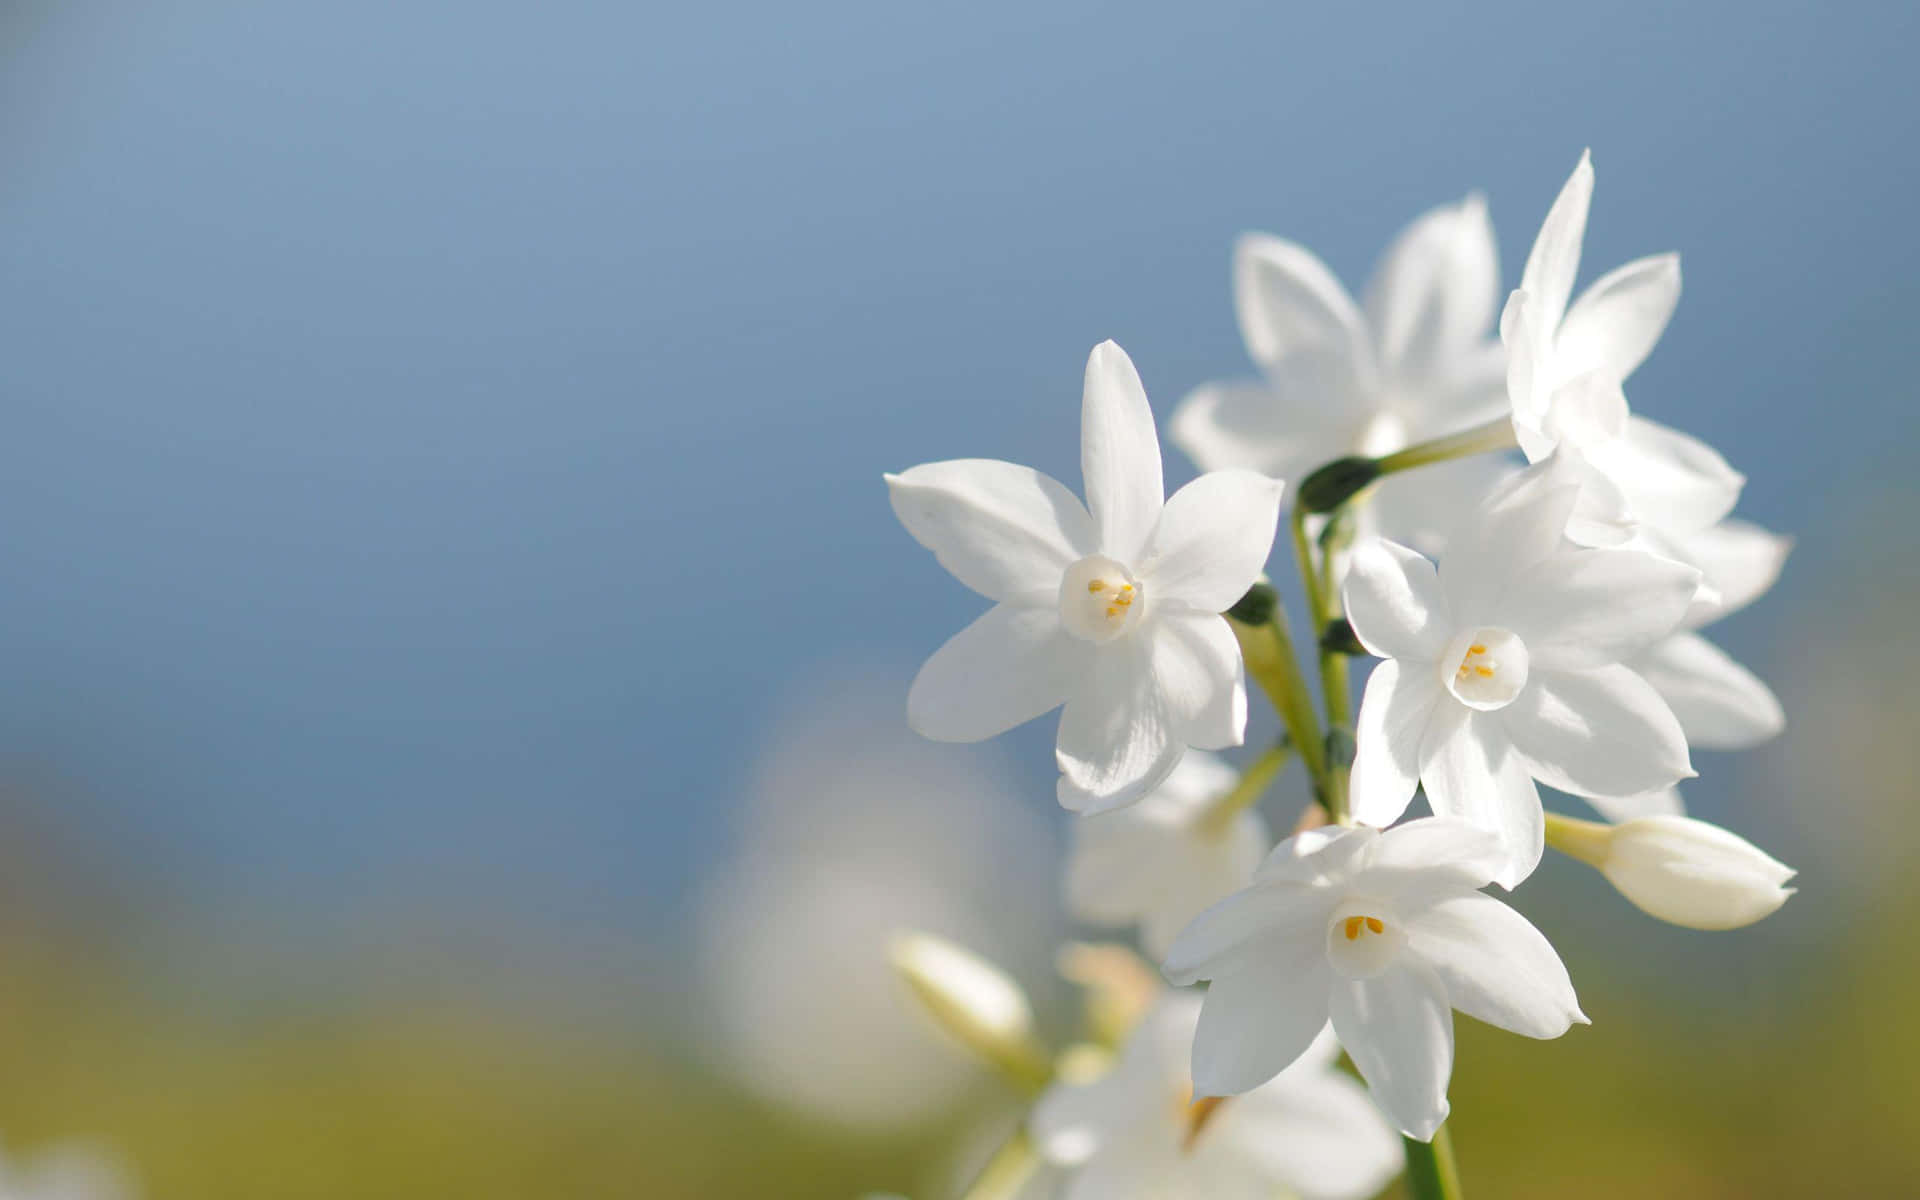 Elegant White Flowers in Full Bloom